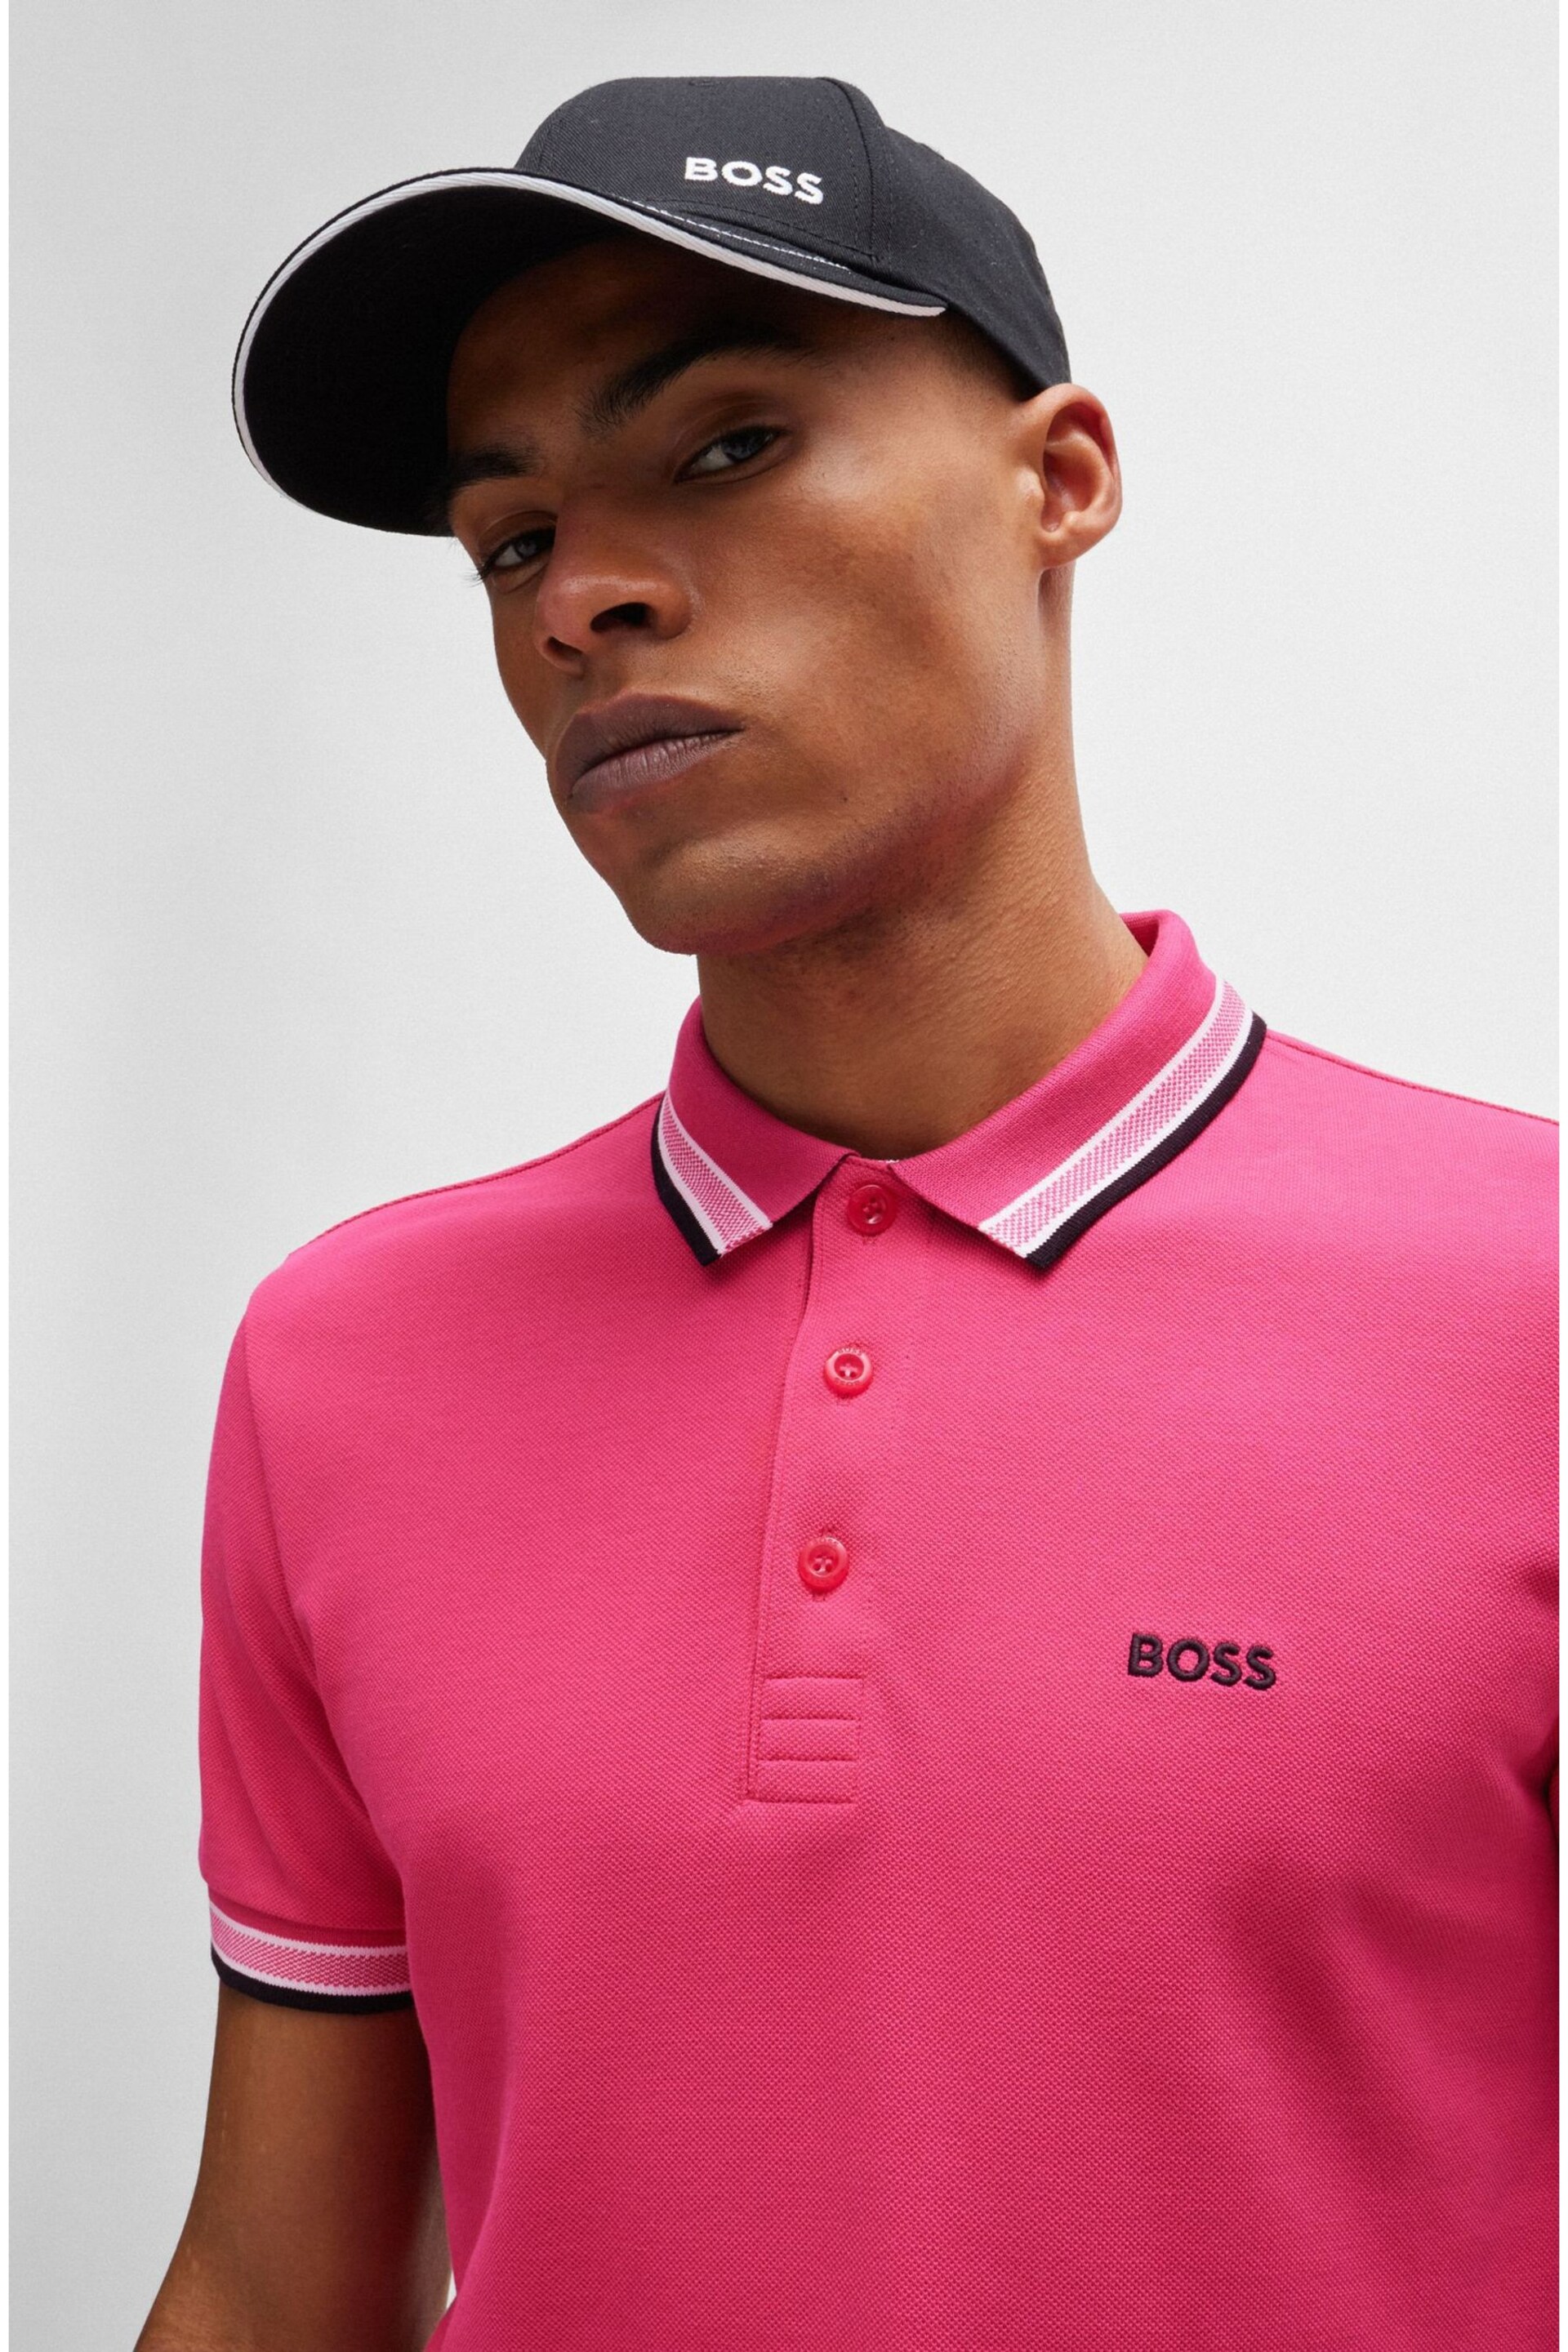 BOSS Light Pink Paddy Polo Shirt - Image 1 of 5